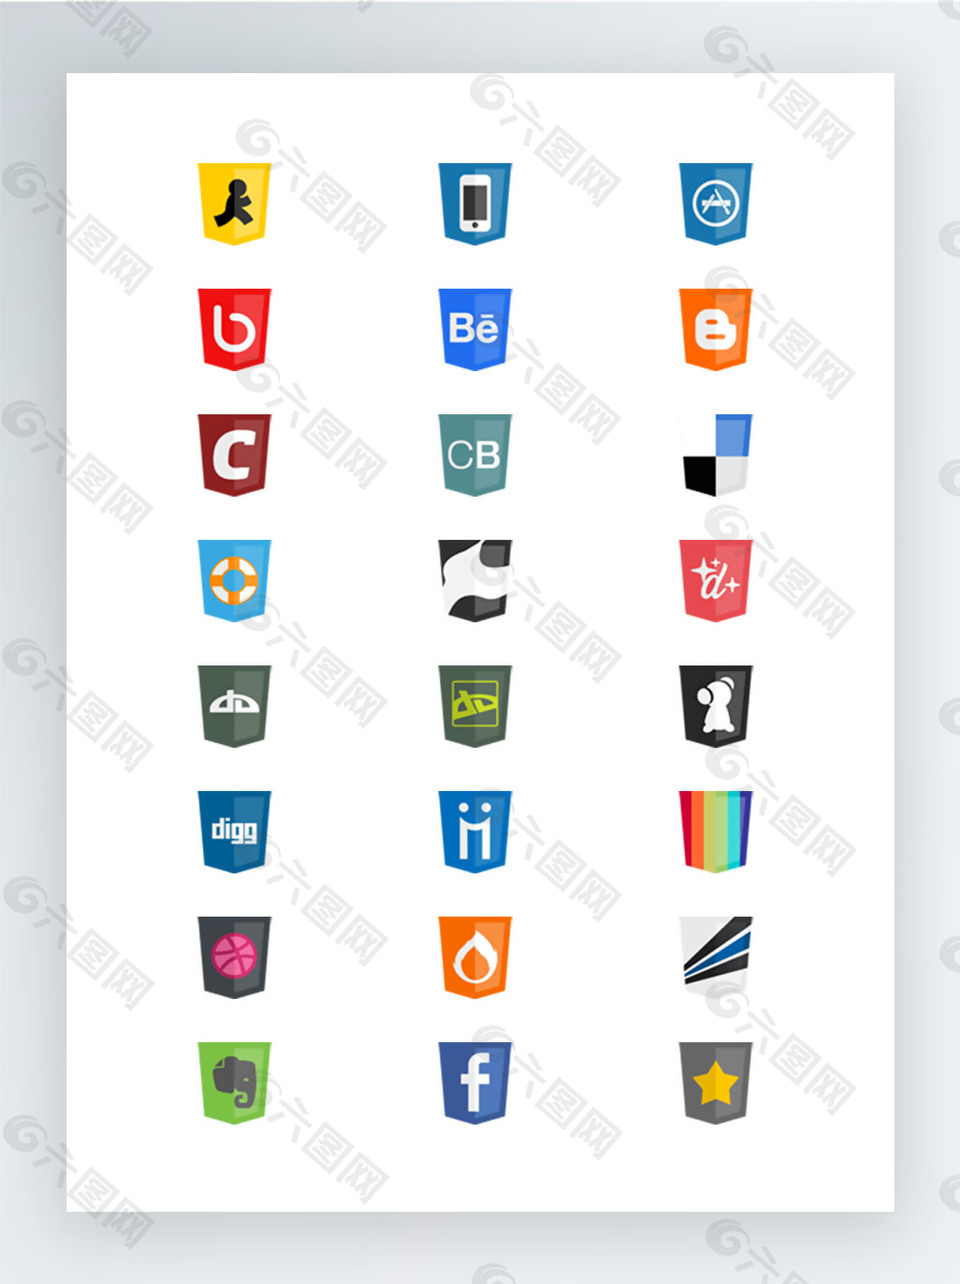 盾牌形状的社交媒体网站标志图标集